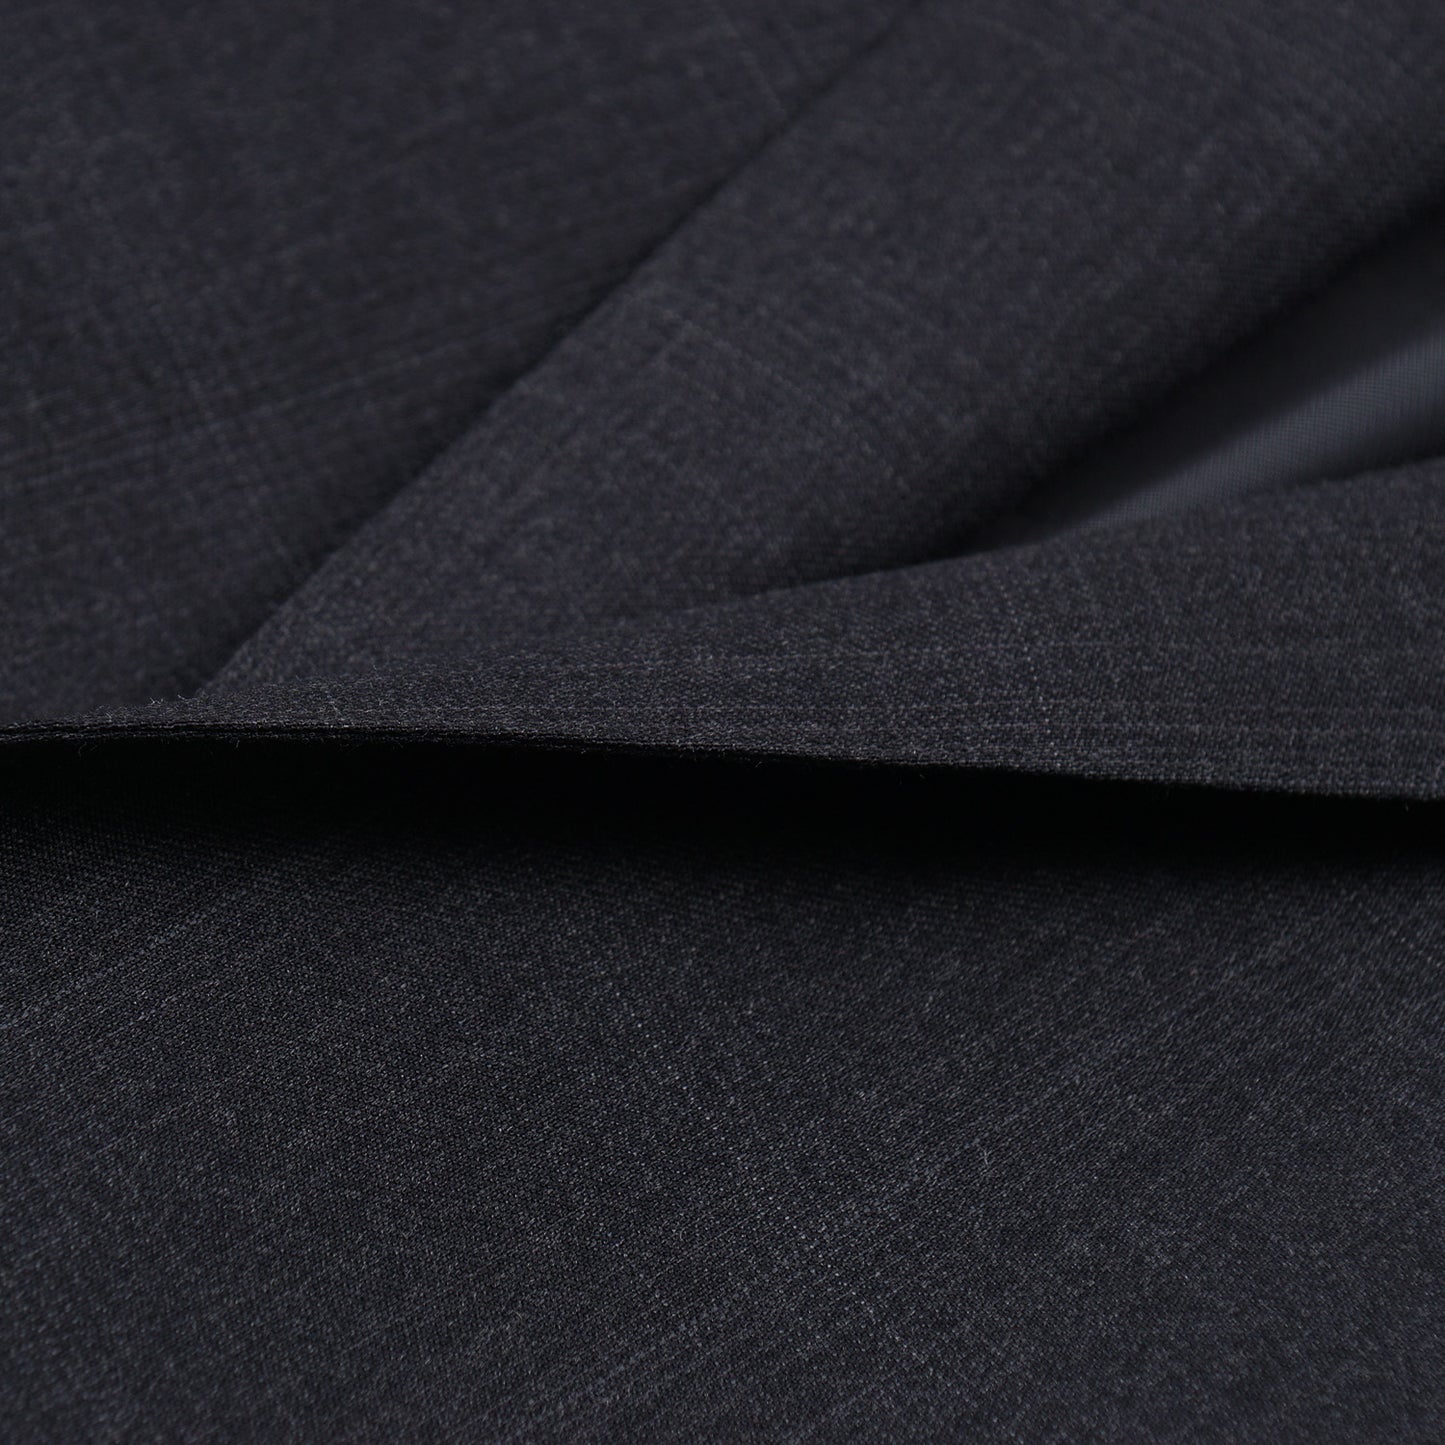 Ermenegildo Zegna 'Multiseason' Wool Suit - Top Shelf Apparel